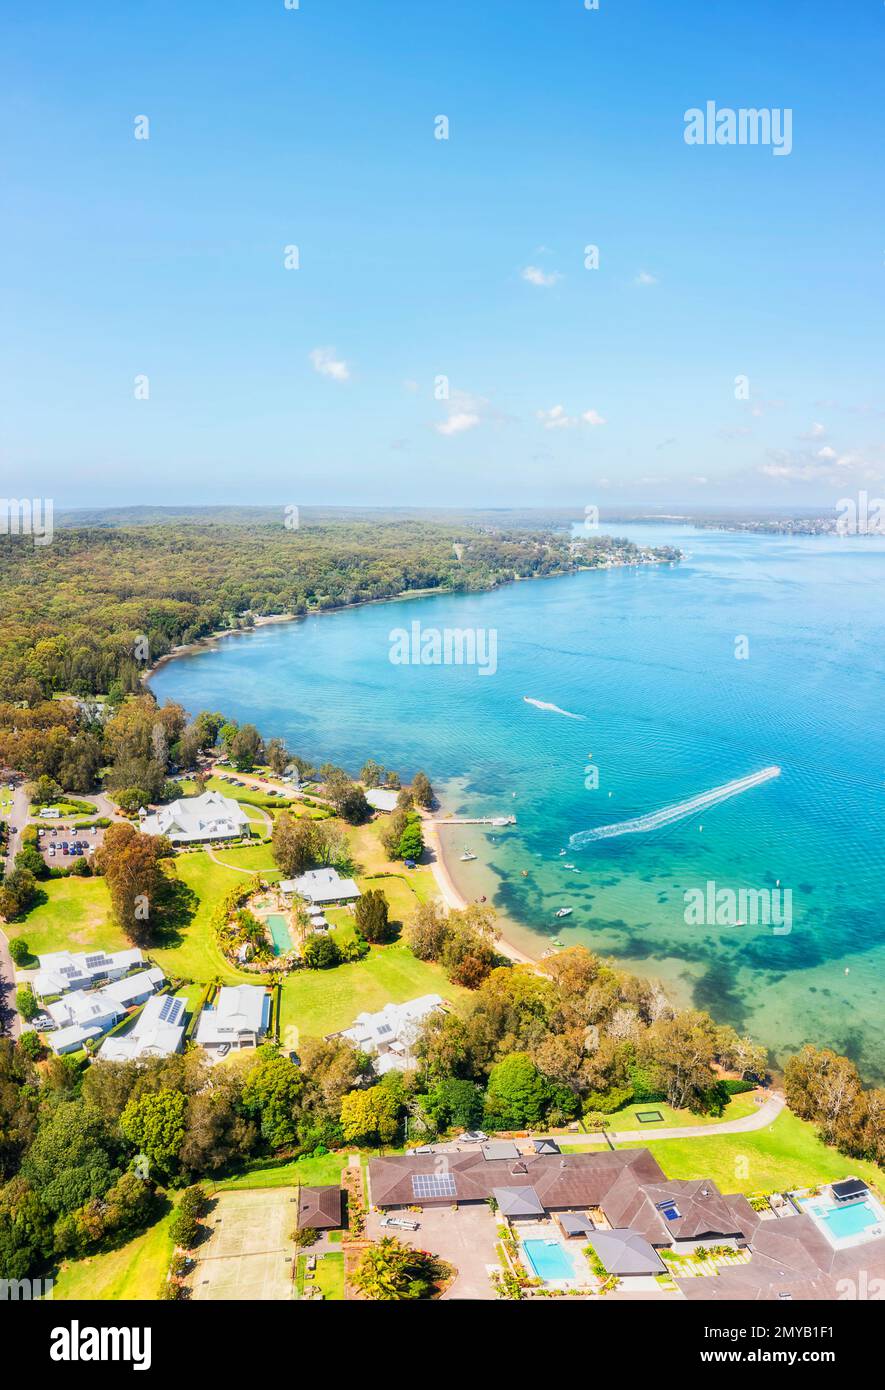 Beliebtes Reiseziel am Ufer des Macquarie Sees - Murrays Beach Resort Stadt mit unvergleichlichem vertikalem Panorama. Stockfoto